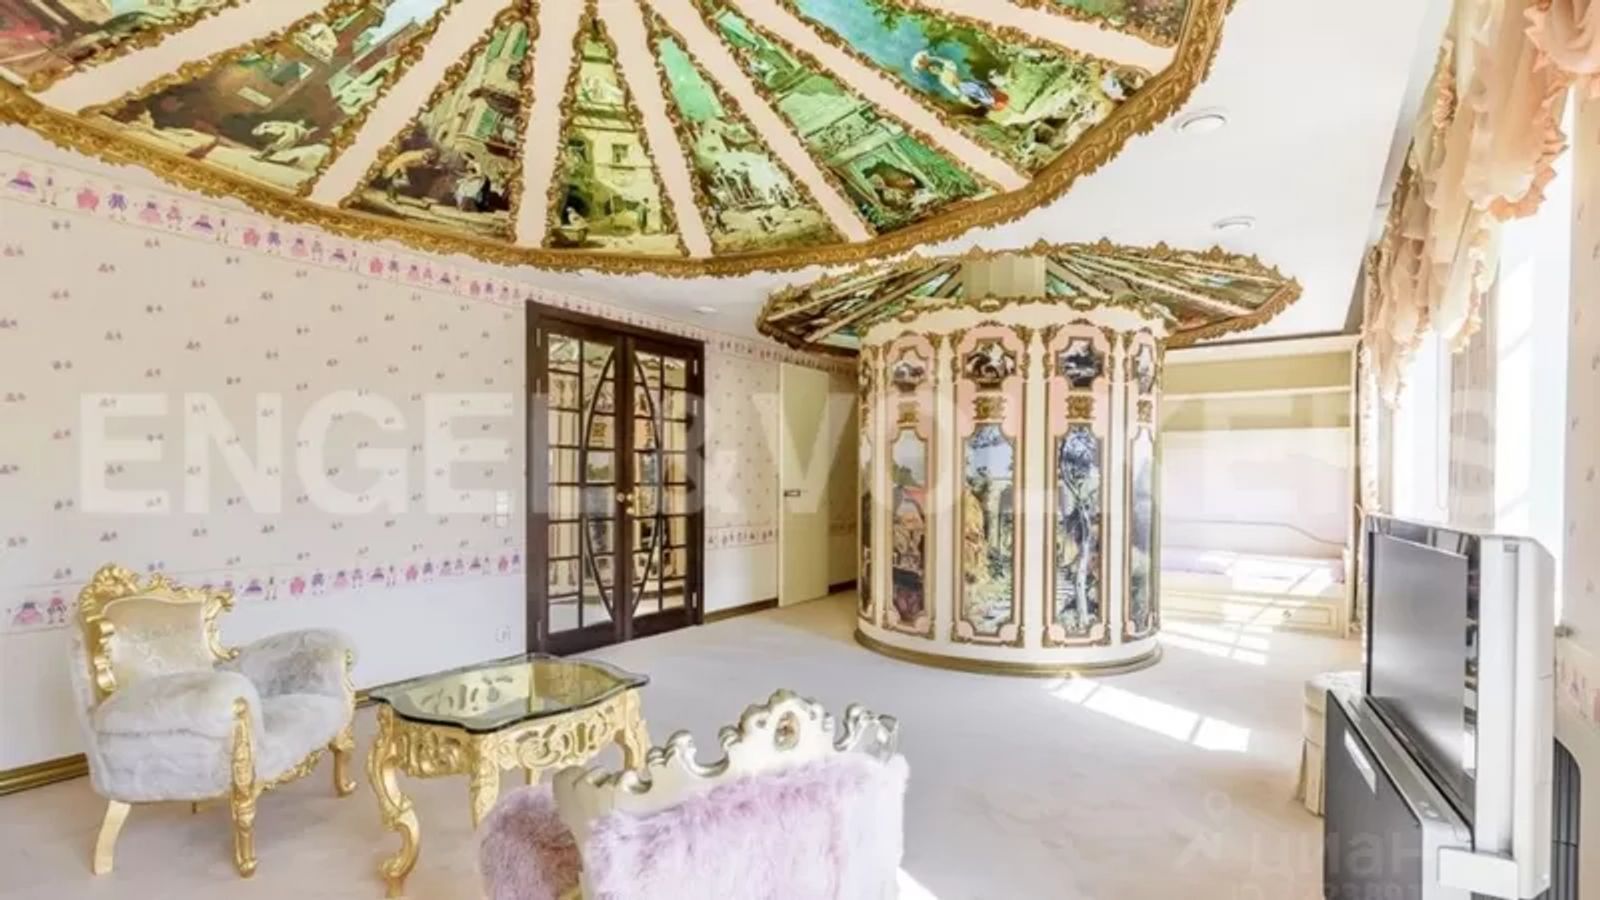 Кресло-гусеница и коконы на потолке: бывшая любовница Путина опубликовала интерьеры своей квартиры